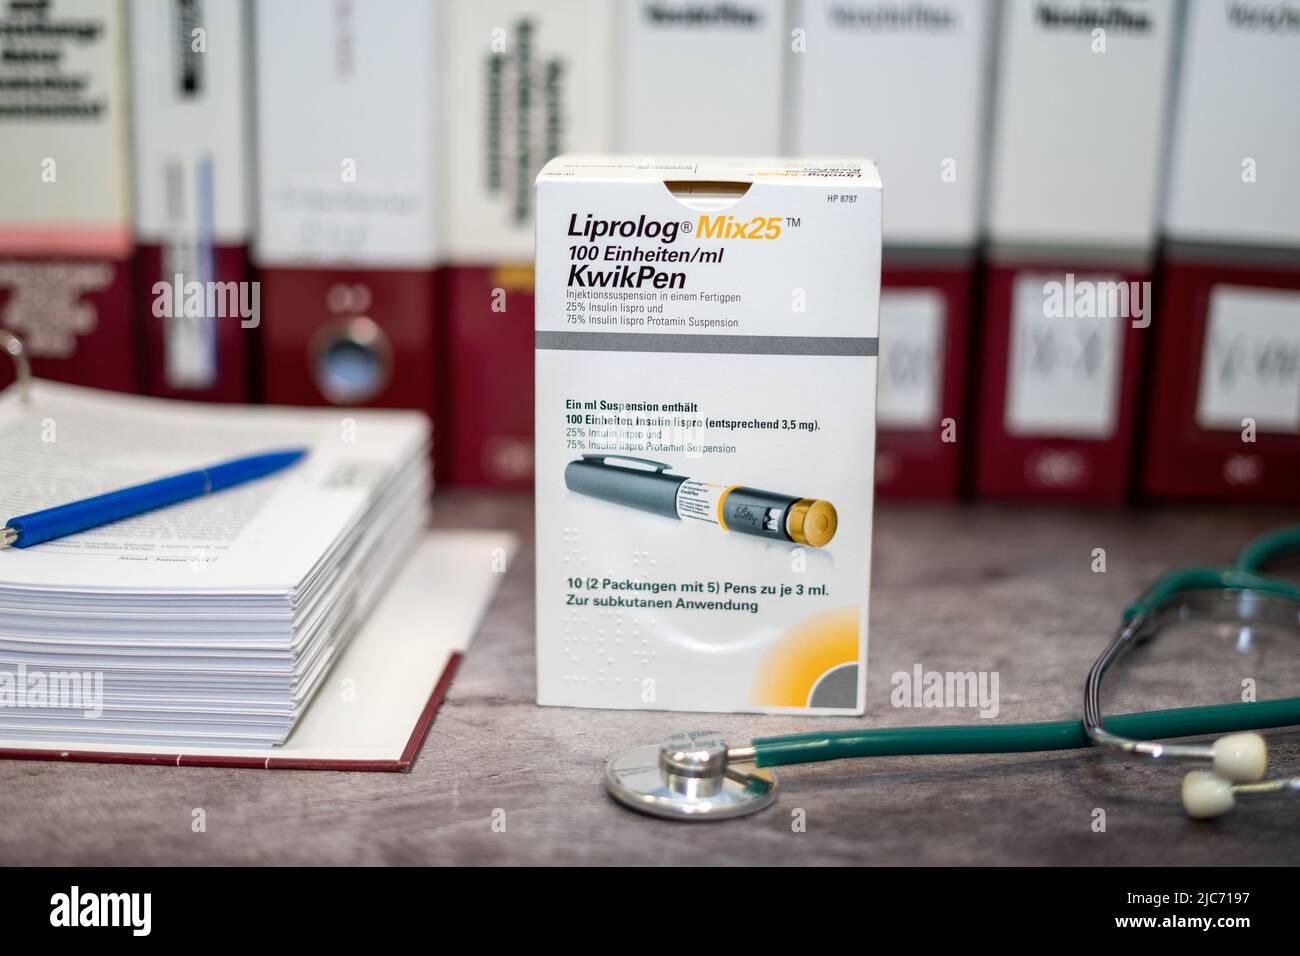 Farmaco Liprolog contenente insulina lispro per diabete mellito, su un tavolo e in background diversi libri medici. Foto Stock